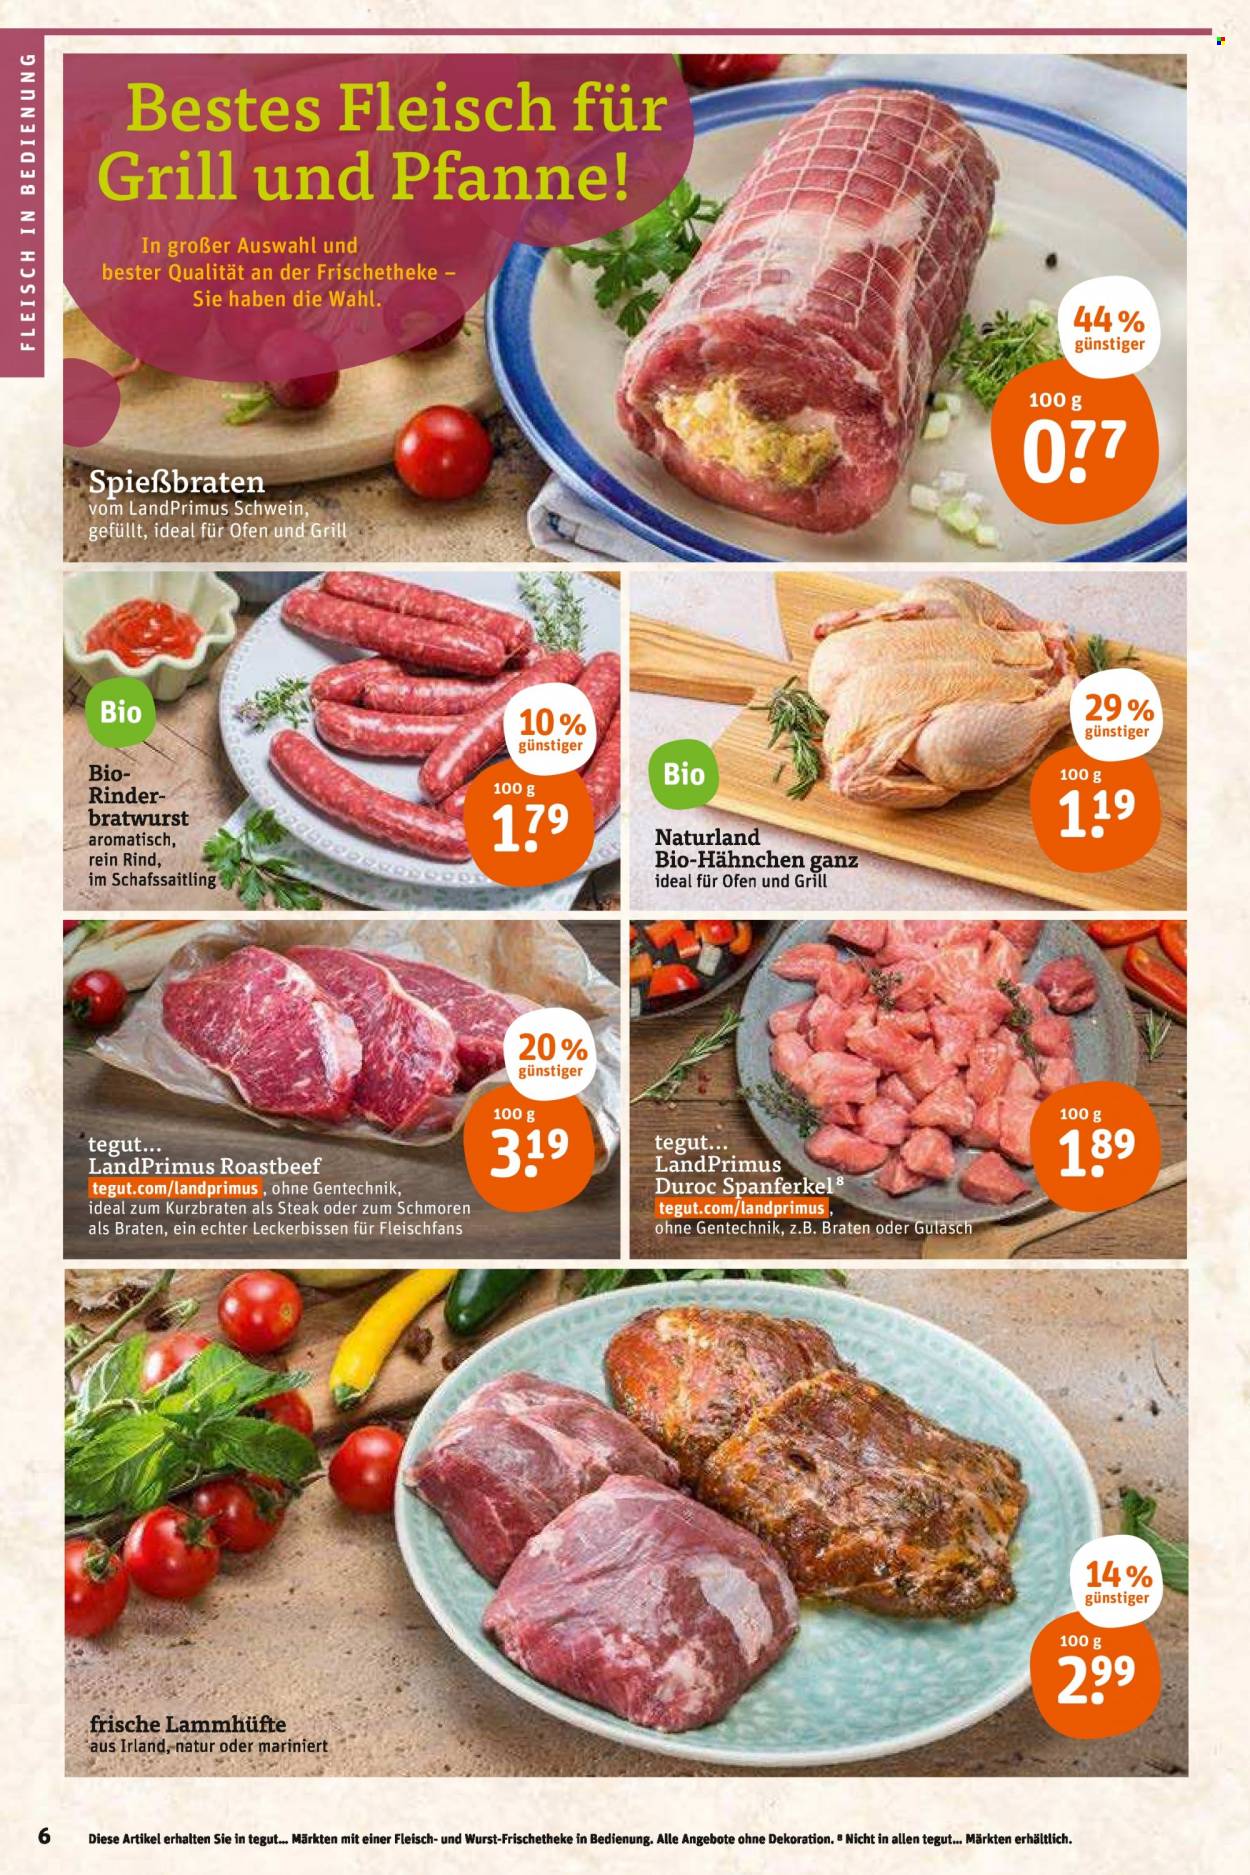 thumbnail - Prospekte tegut... - 16.05.2022 - 21.05.2022 - Produkte in Aktion - Steak, Rindfleisch, Roastbeef, Lammfleisch, Bratwurst, Dekoration. Seite 6.